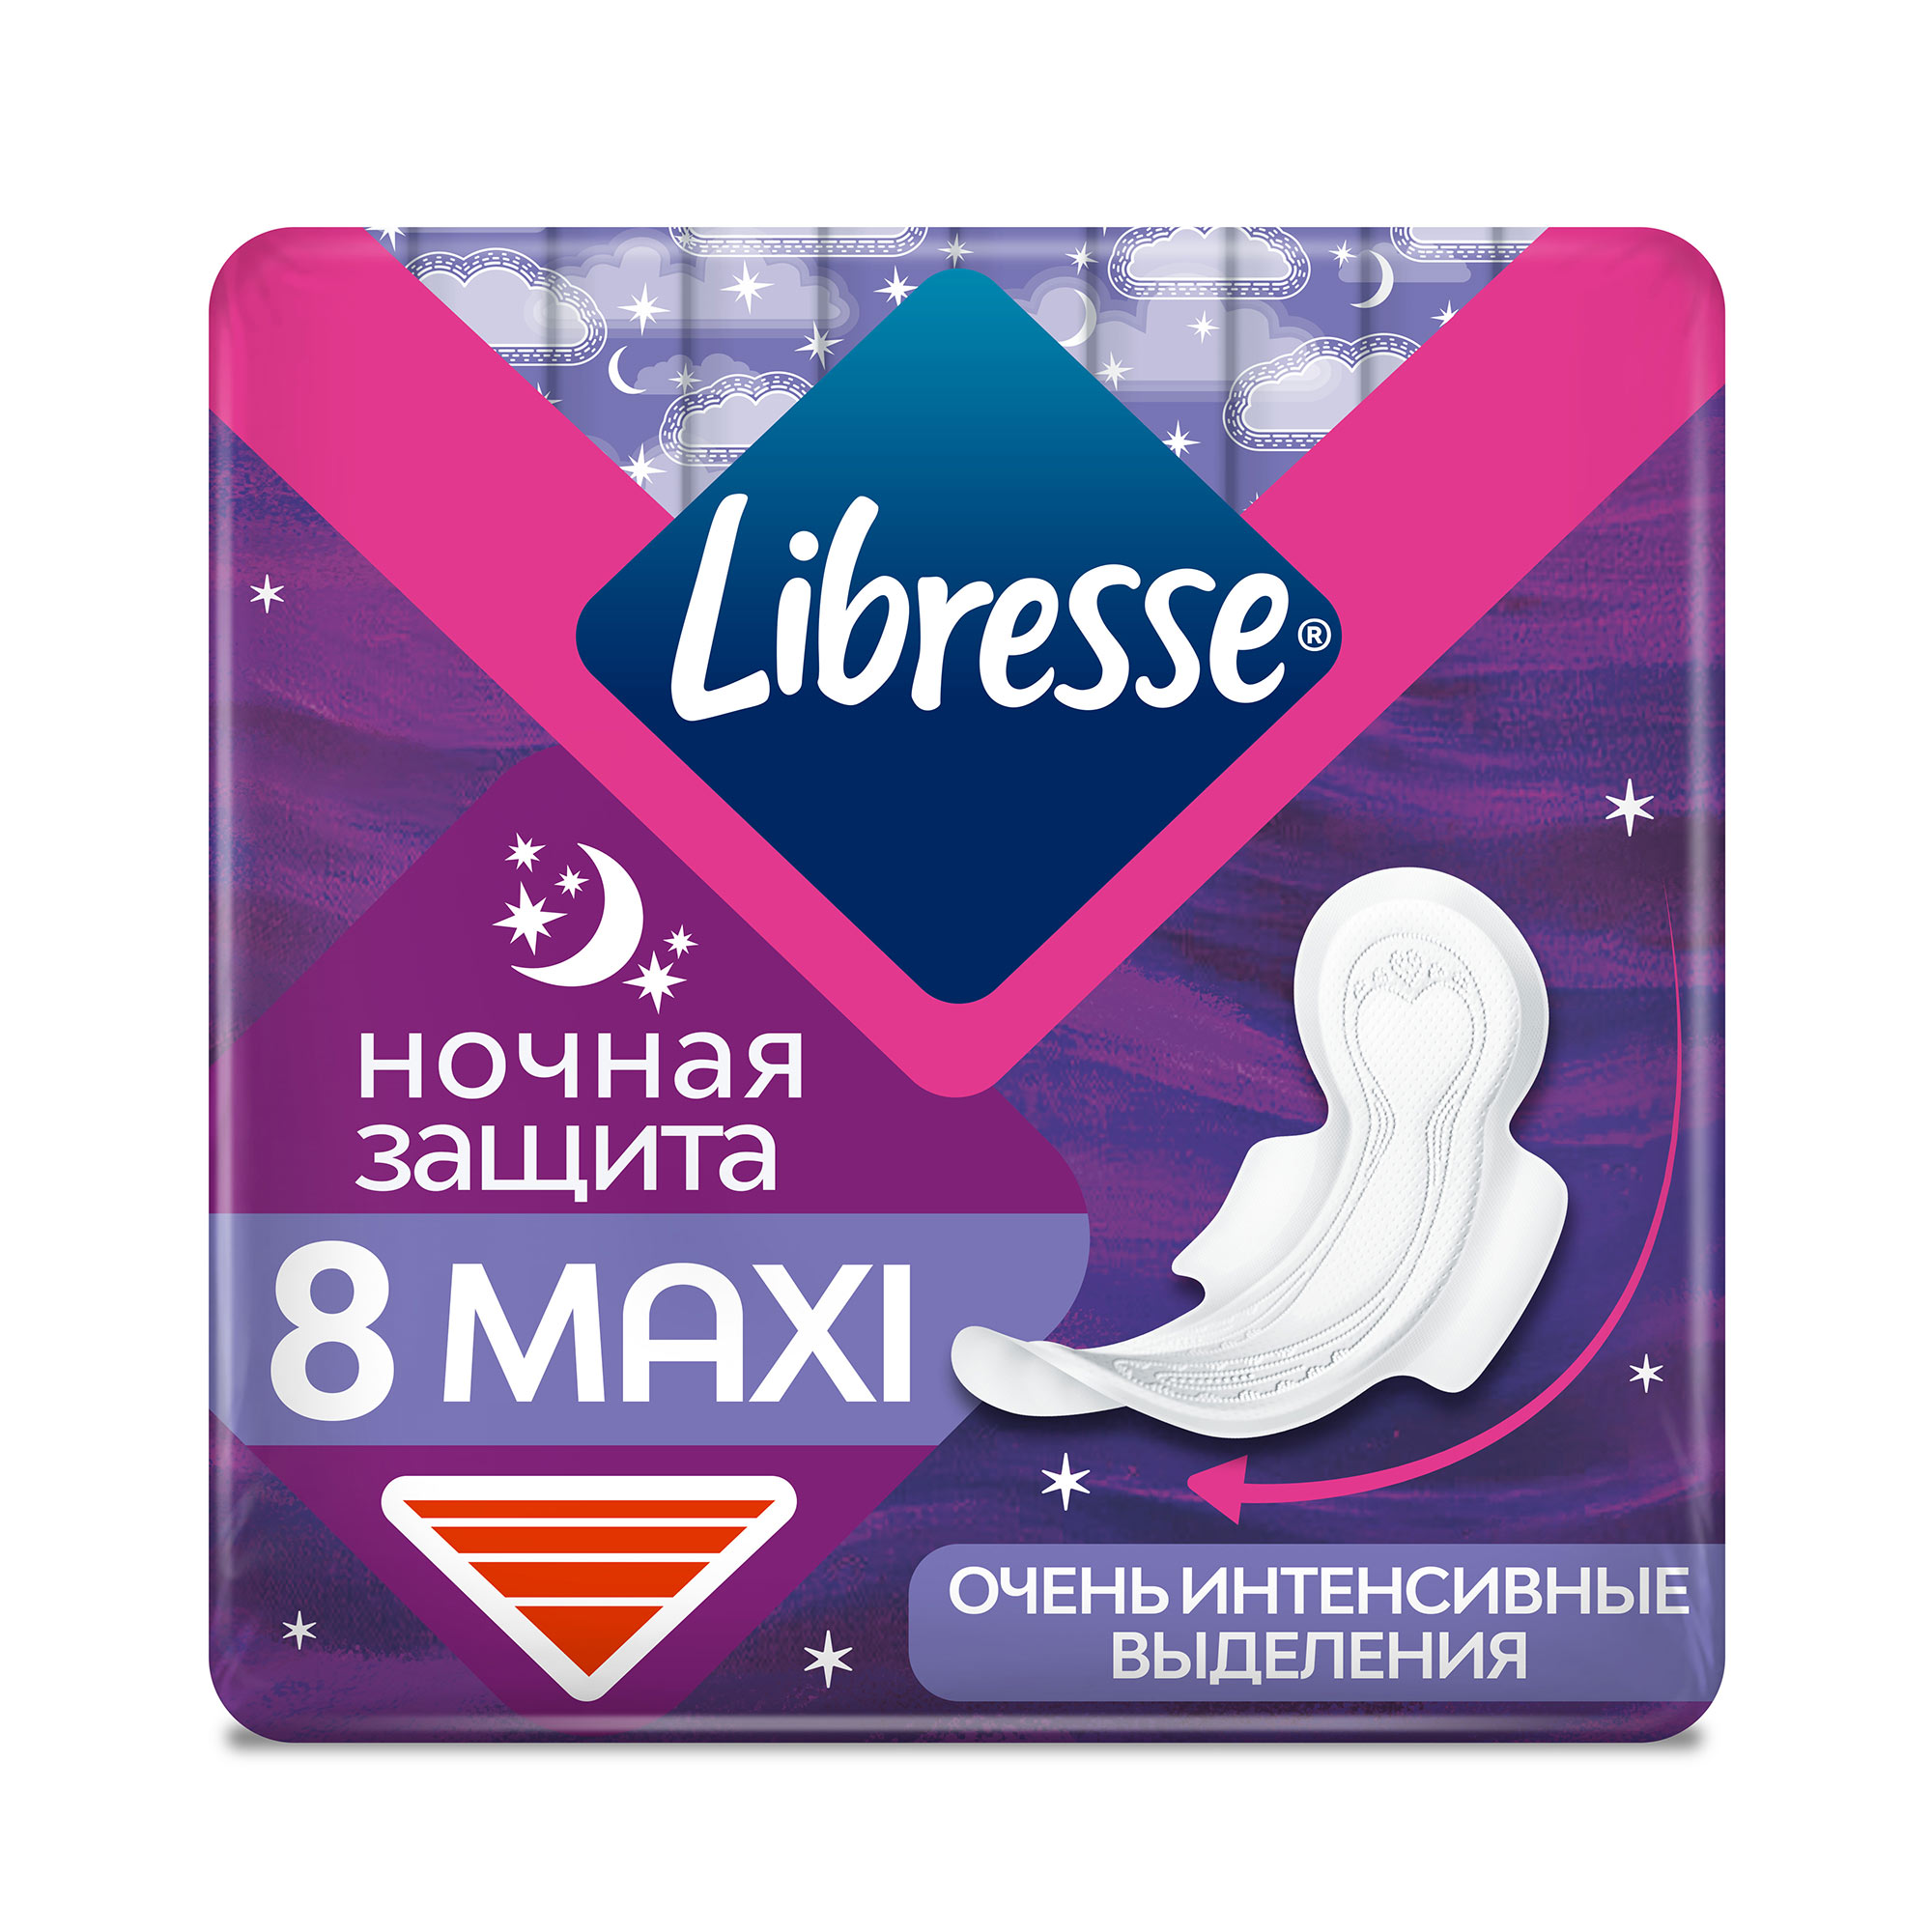 Прокладки Libresse Ночные Maxi 8 шт